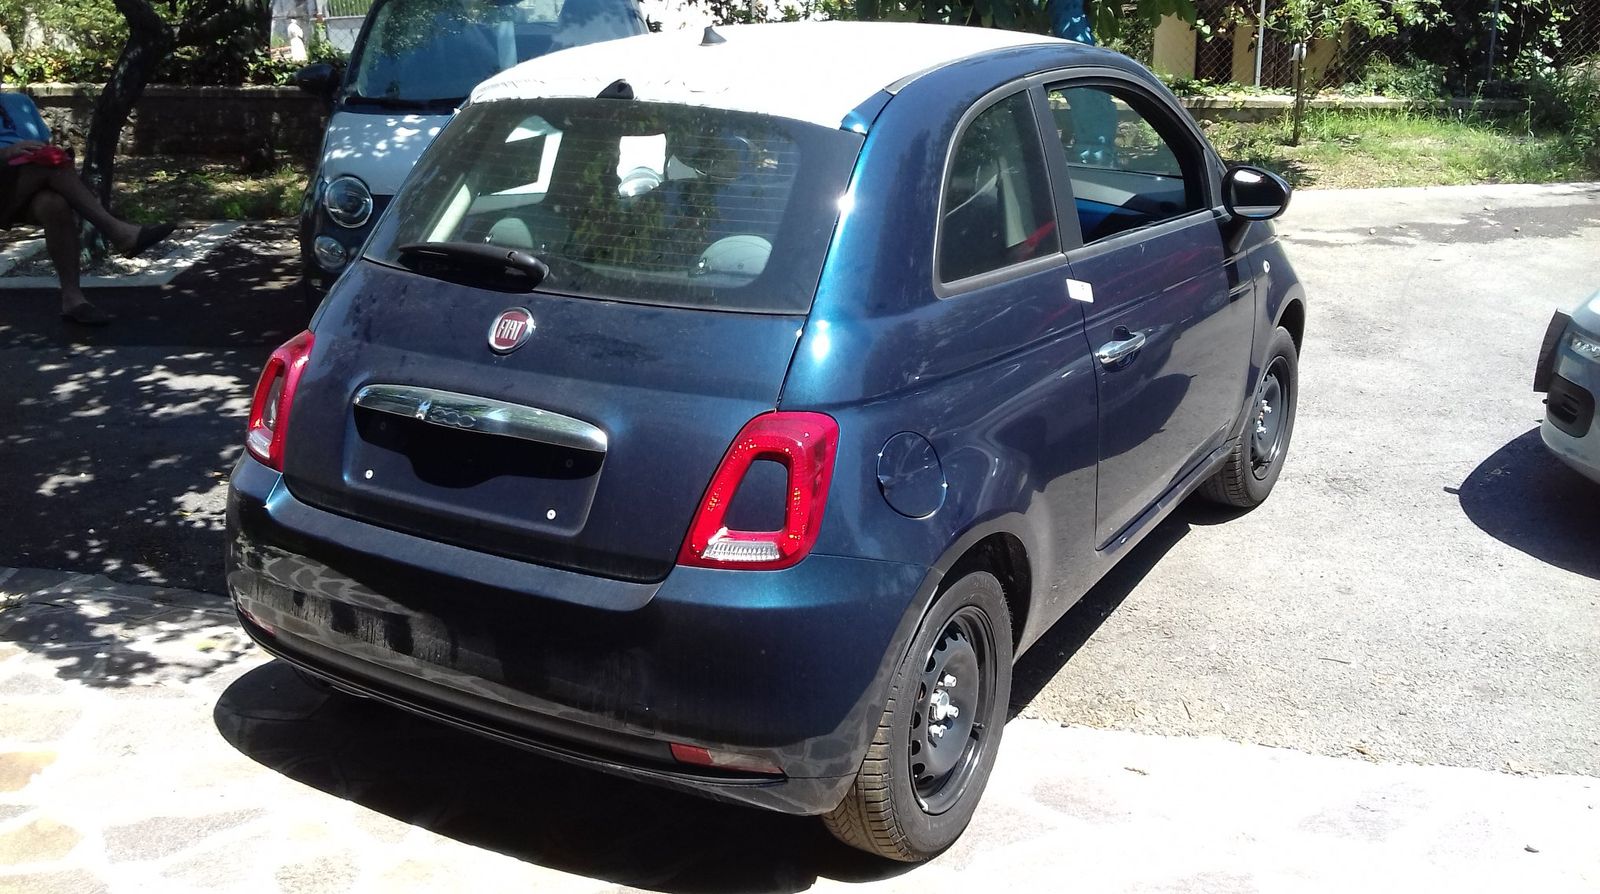 Fiat 500 Pop, blu dipinto di blu...Venduta!  Complimenti Barbara!